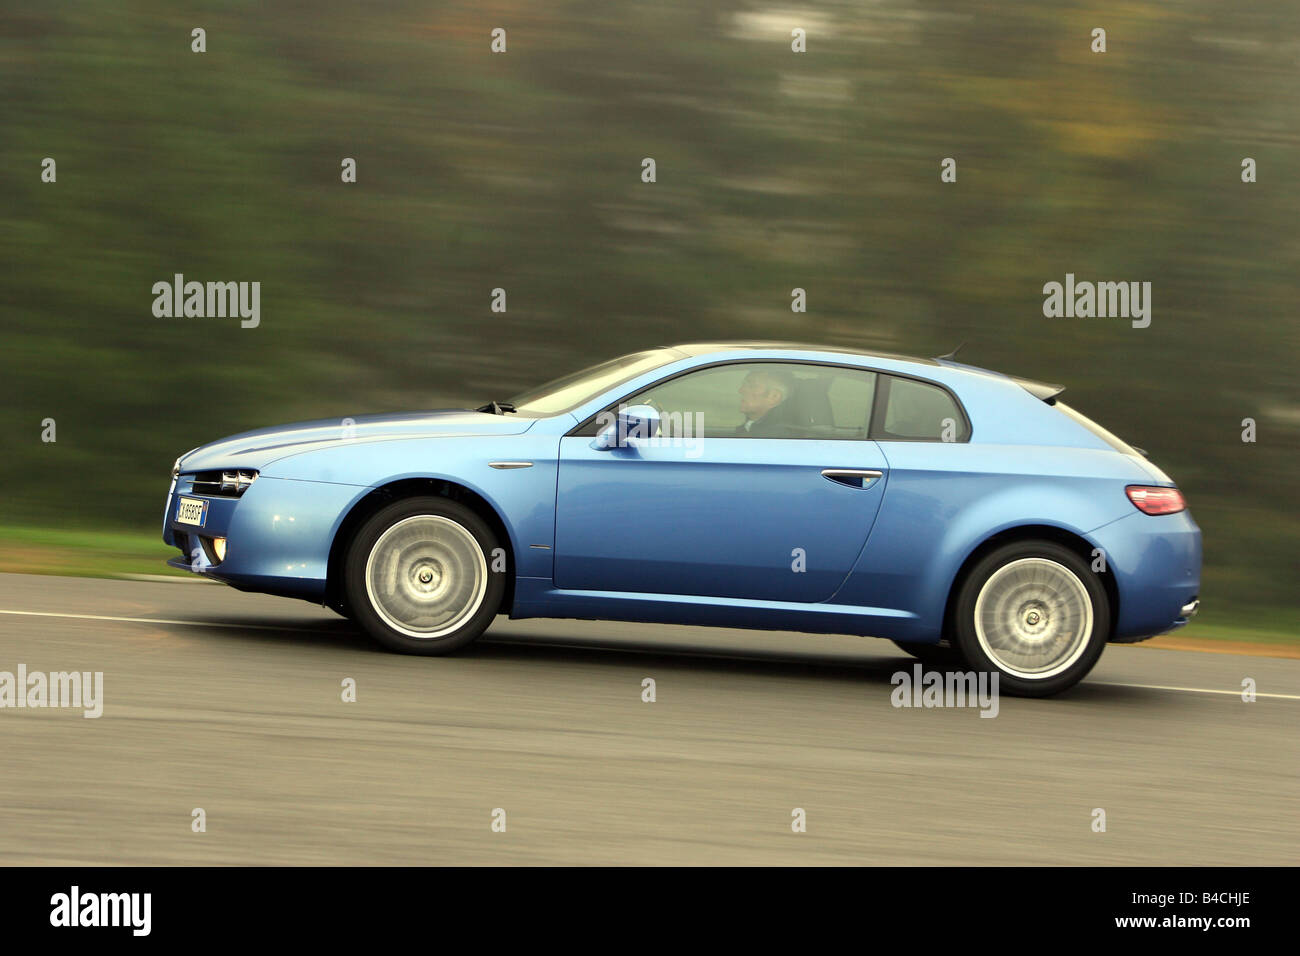 Alfa Romeo Brera JTS 3.2 V6, modello anno 2005-, blu in movimento, vista laterale, country road Foto Stock